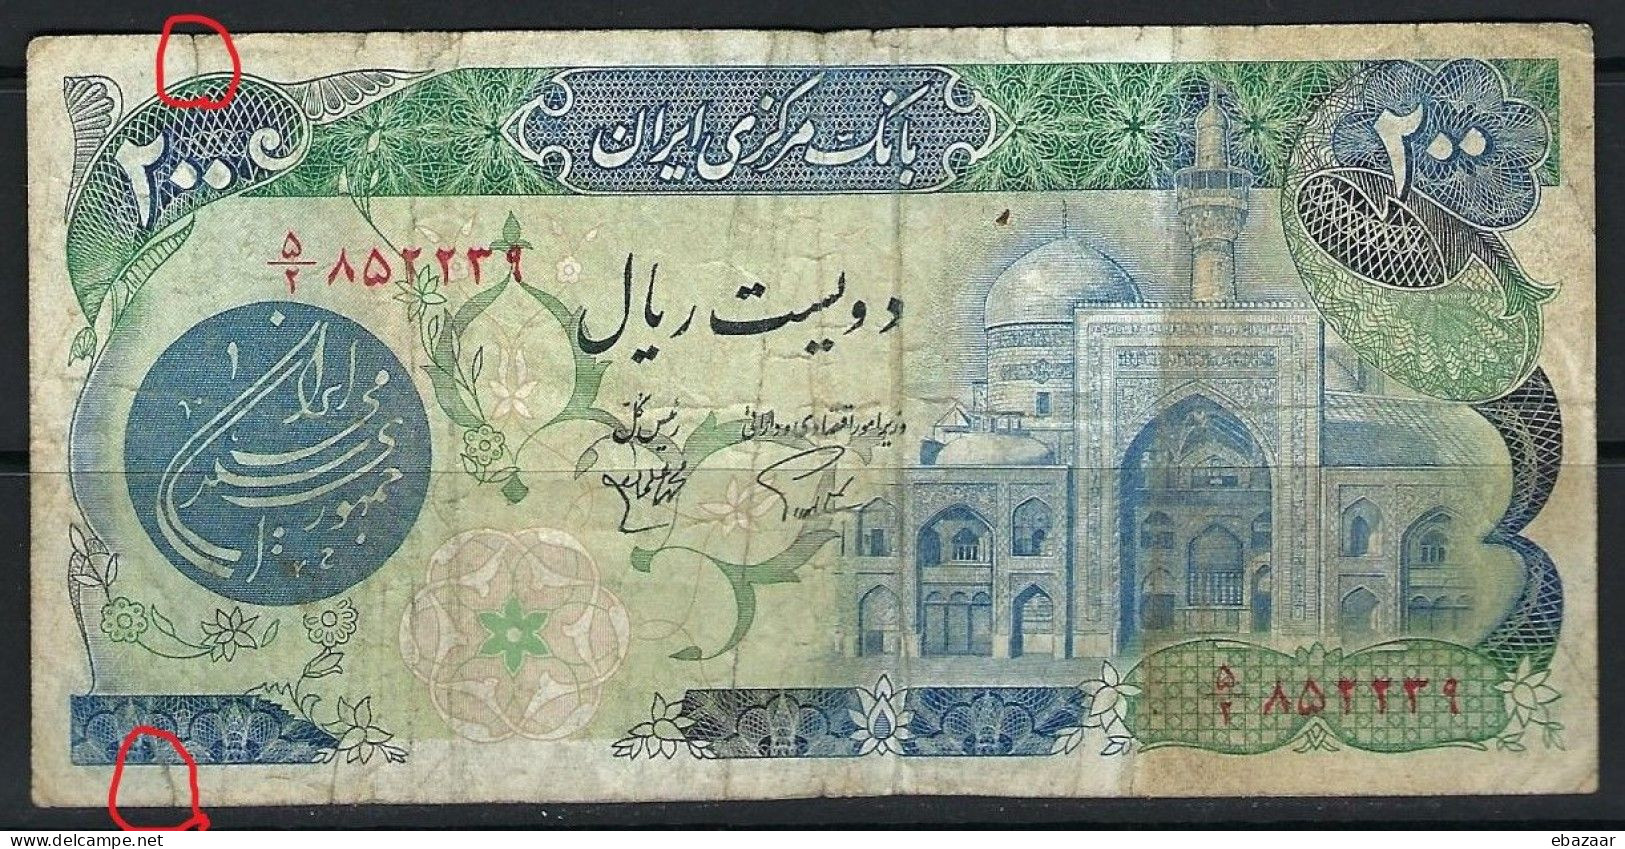 Iran 1981 (Bank Markazi Iran) Banknote 200 Rials P-127a Circulated With Small Tears At Top & Bottom - Irán